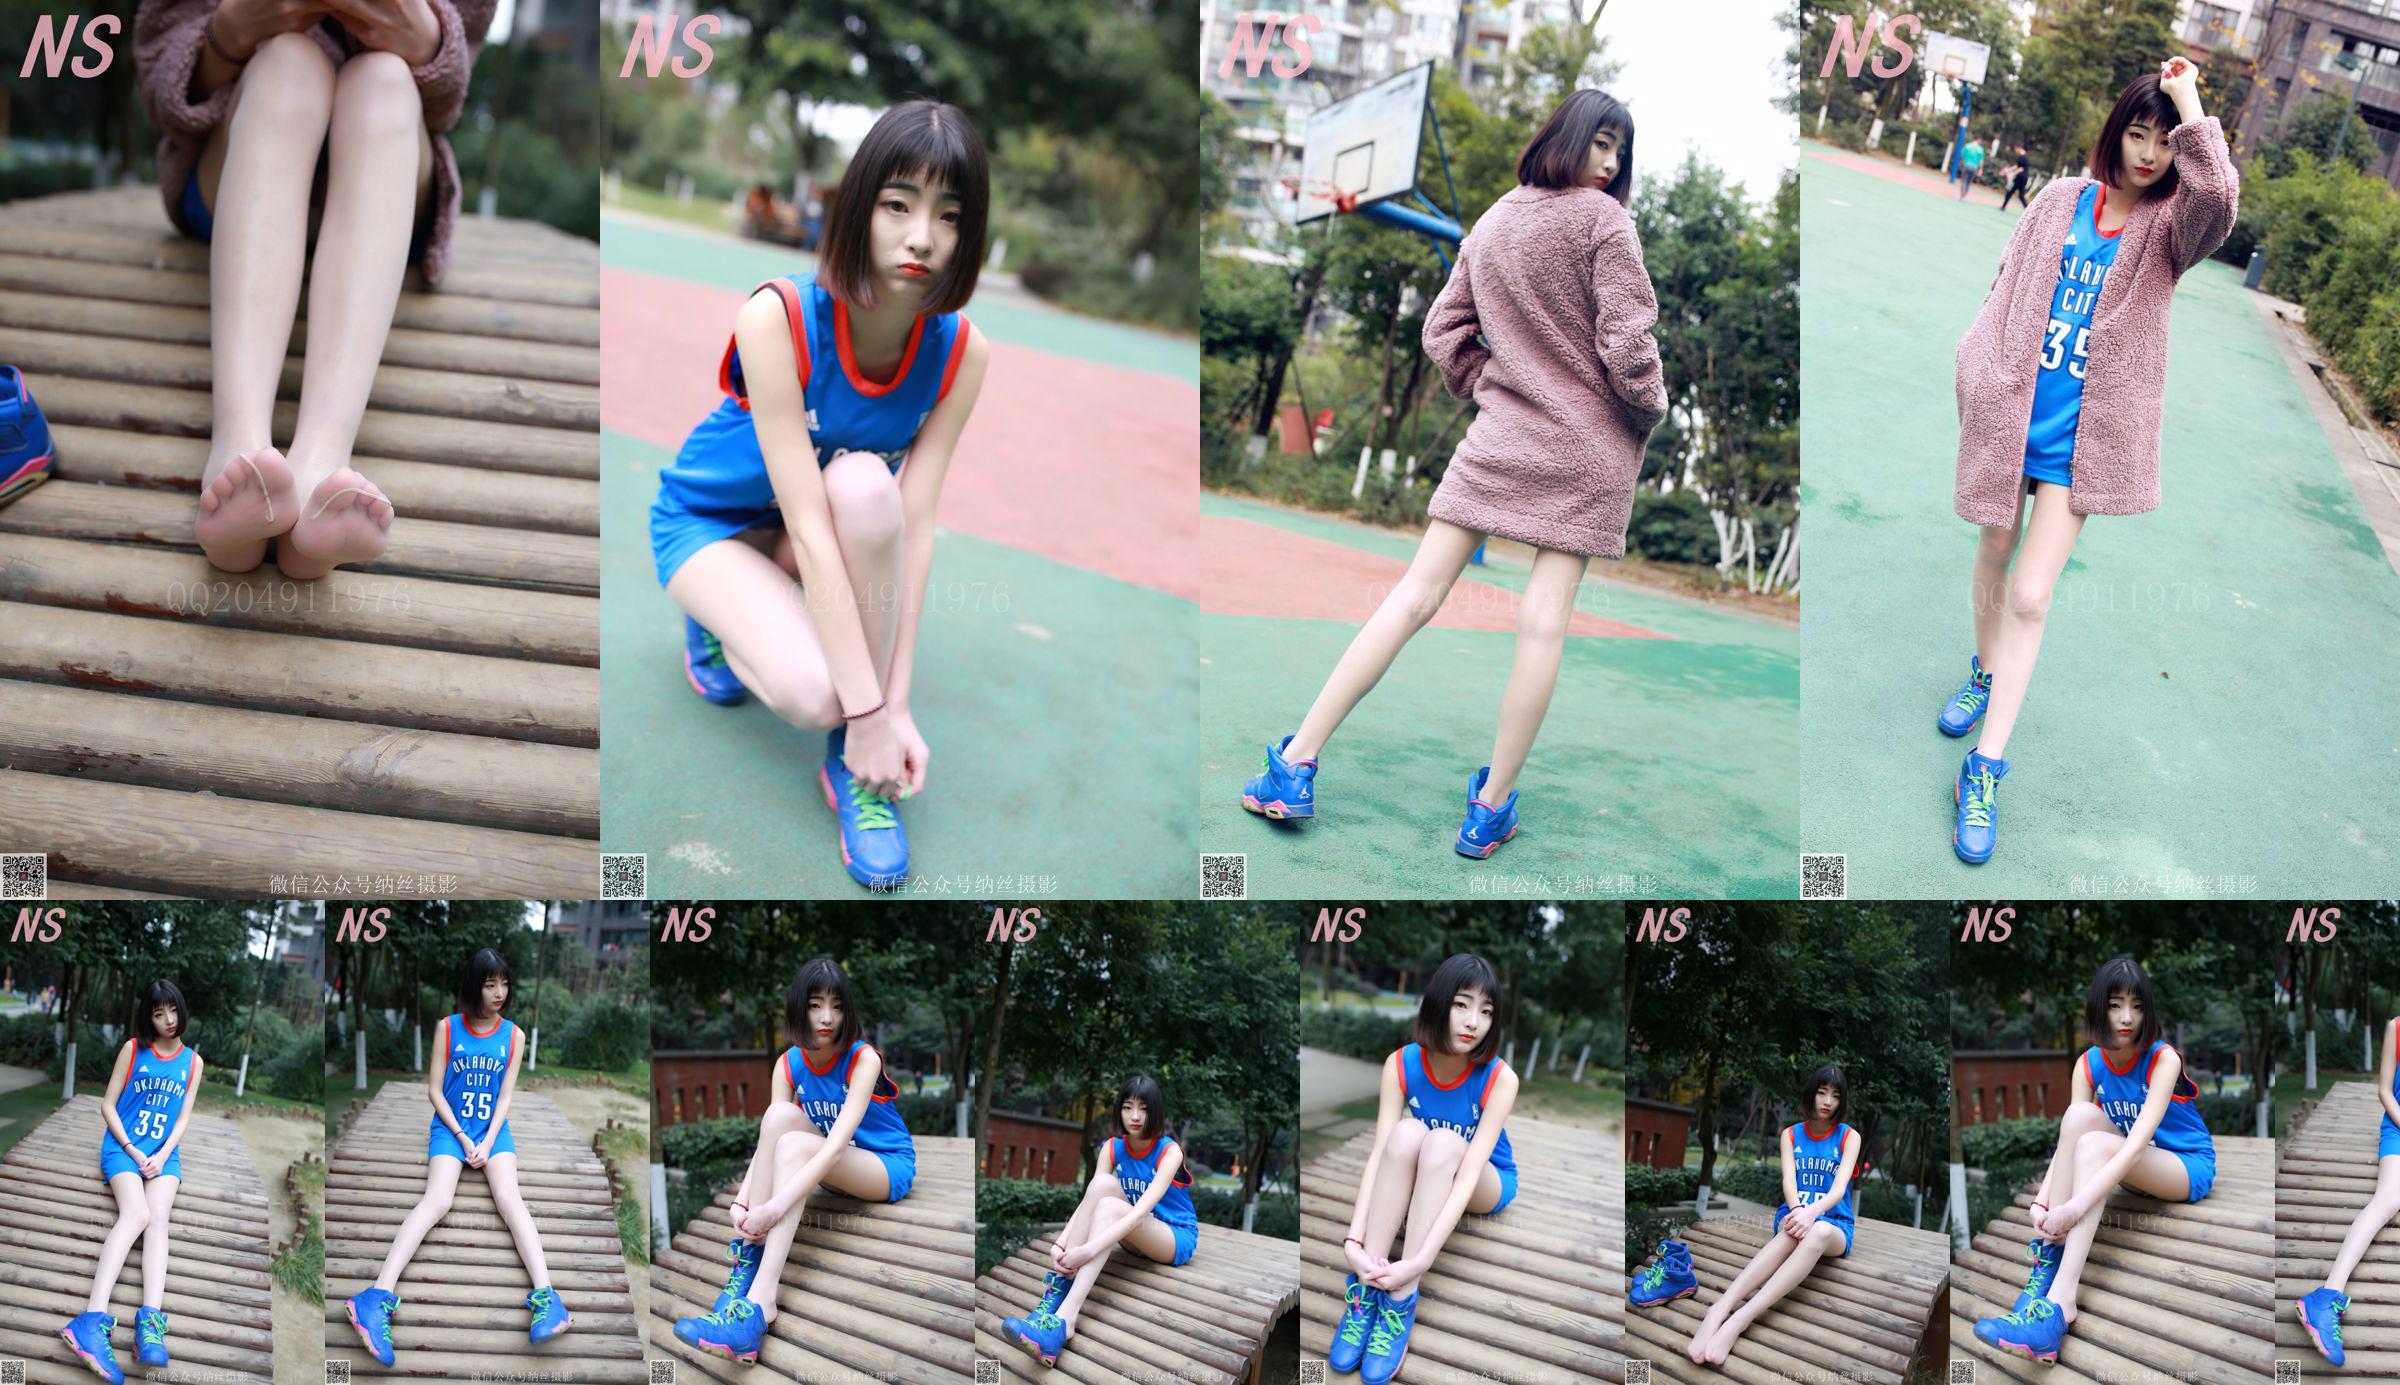 Chen Yujie "Basketball Girl" [Nasi Photography] NO.107 No.dfdaf8 Page 1